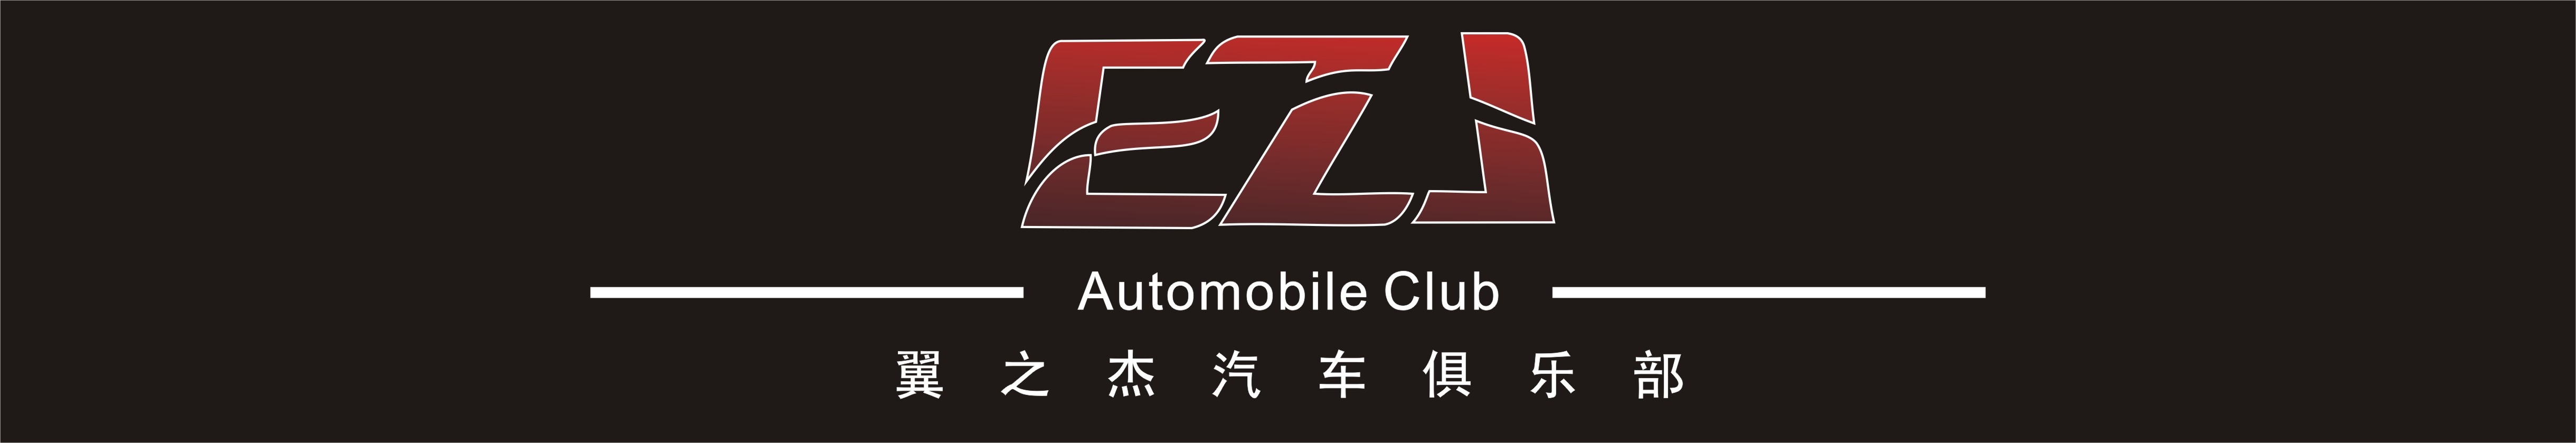 宁波EZJ汽车俱乐部